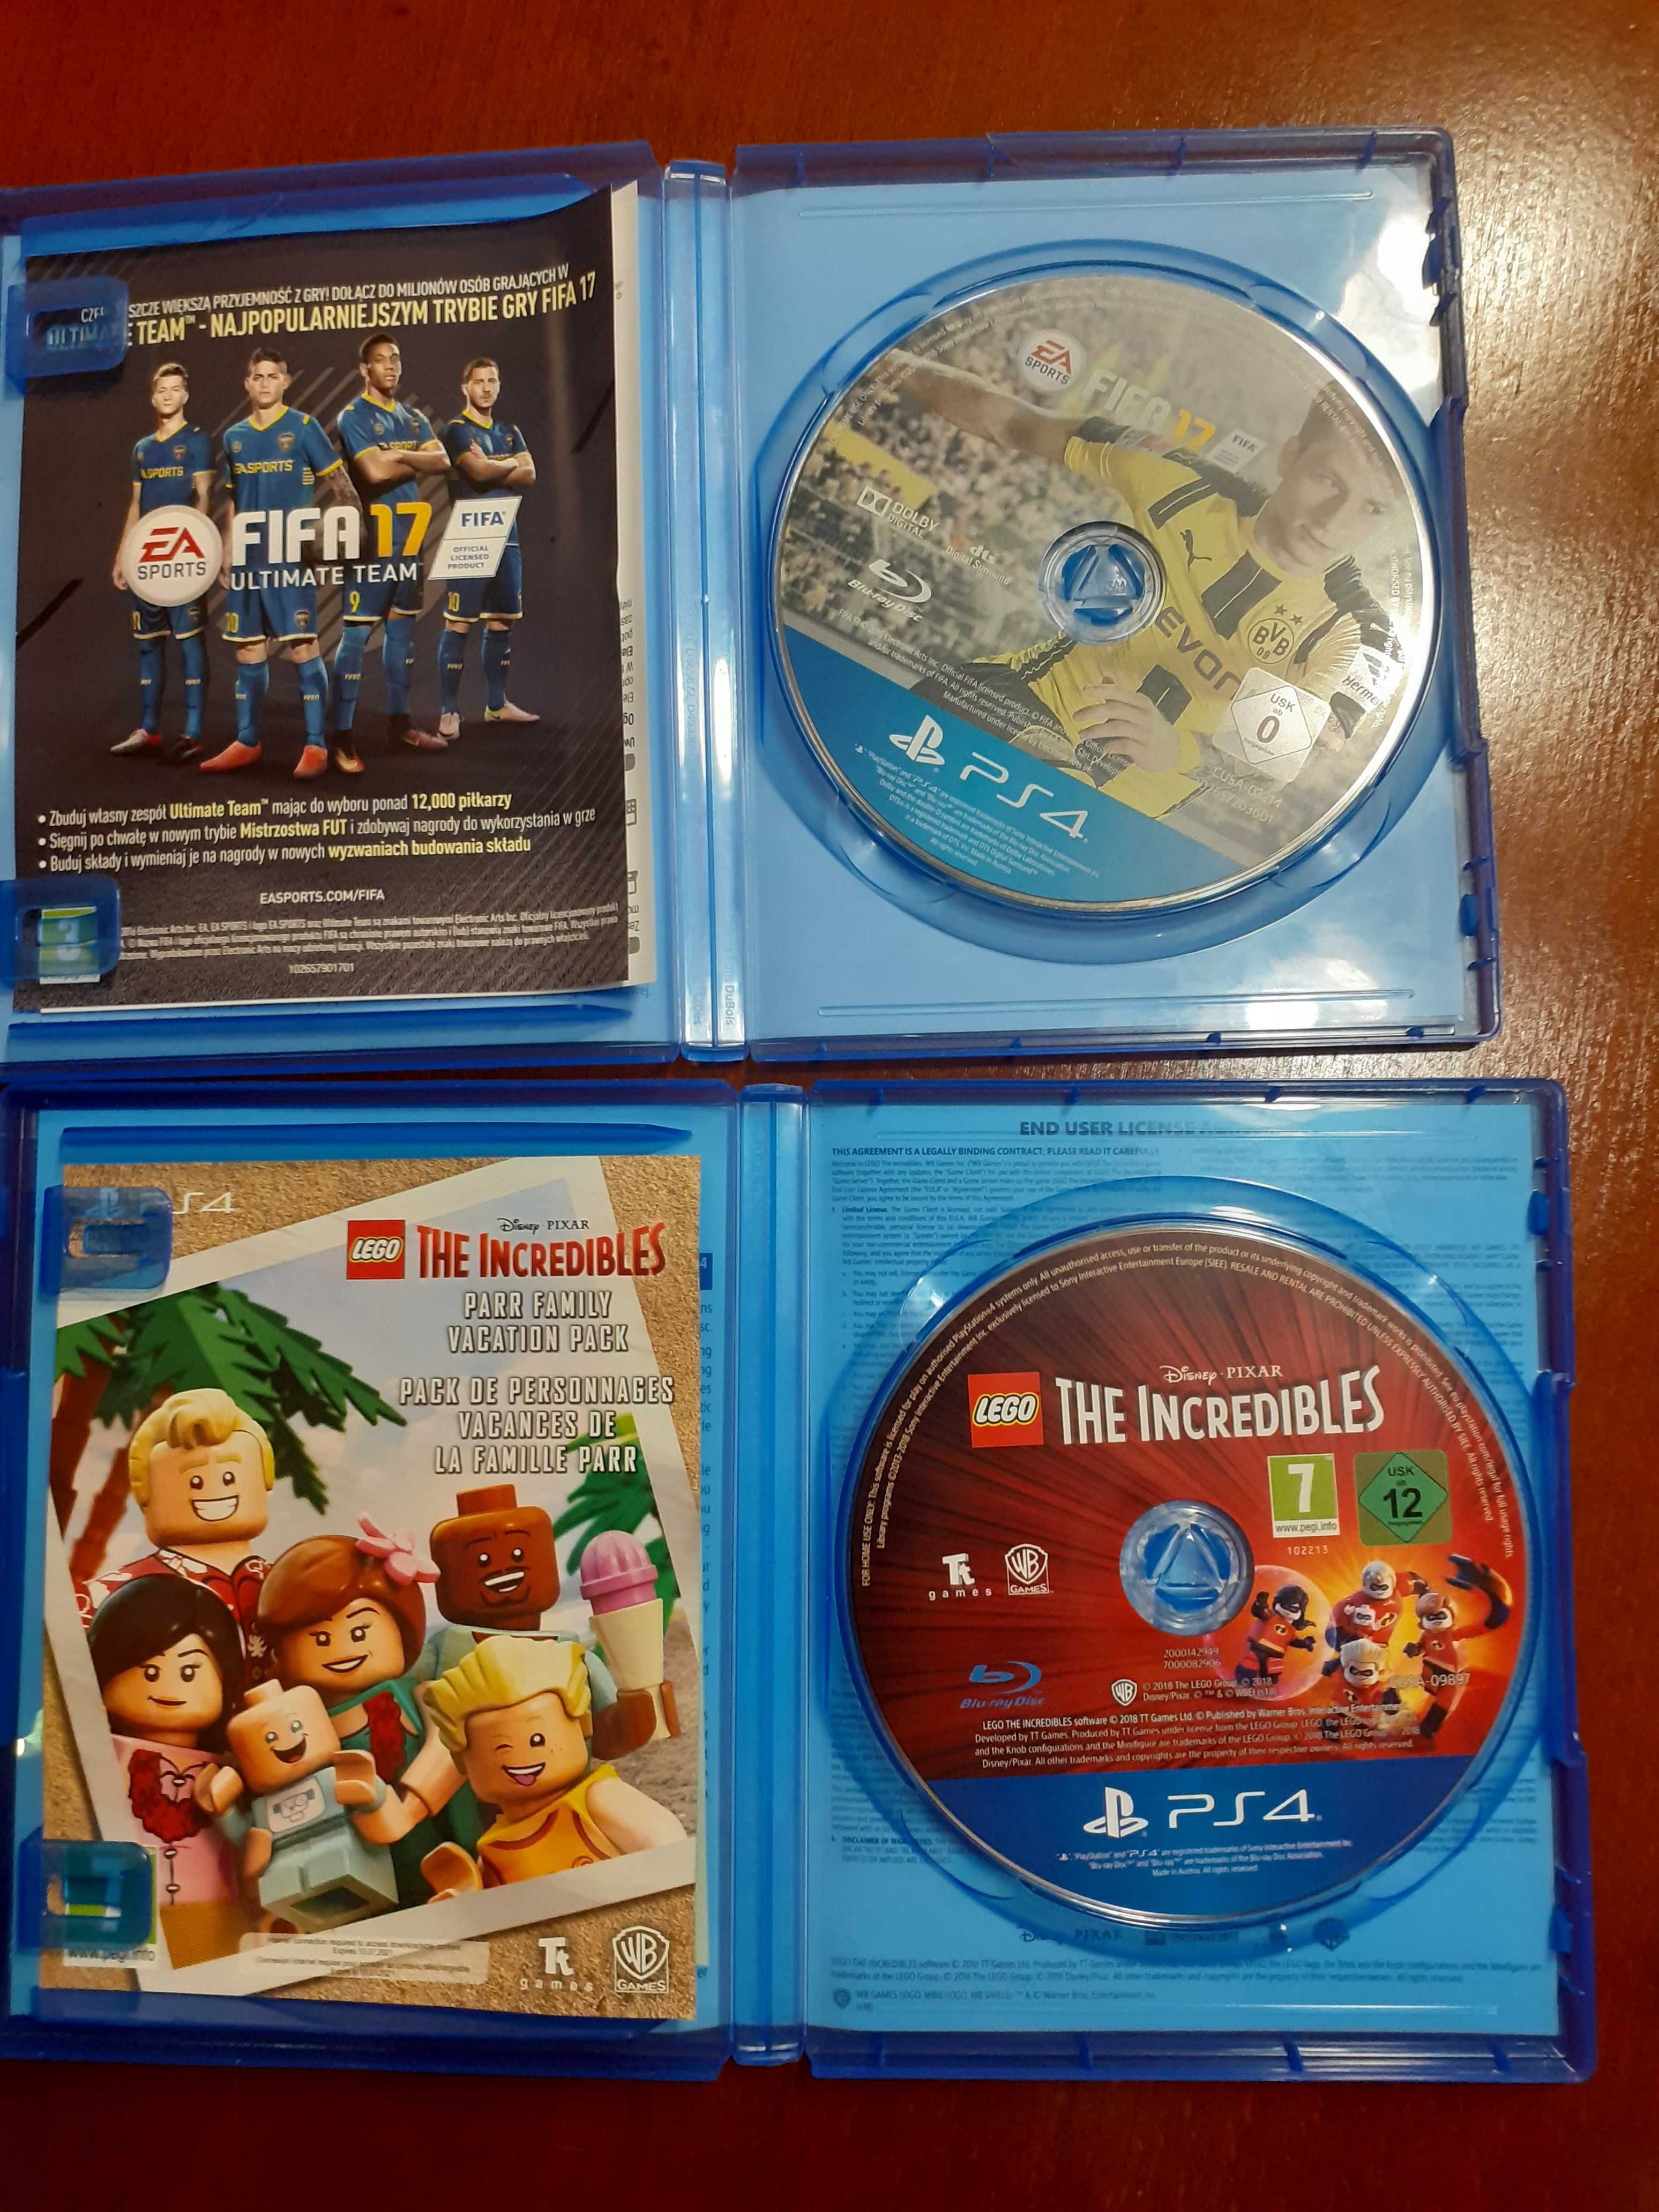 Gry na PS4 (10 gier w różnej grupie wiekowej)